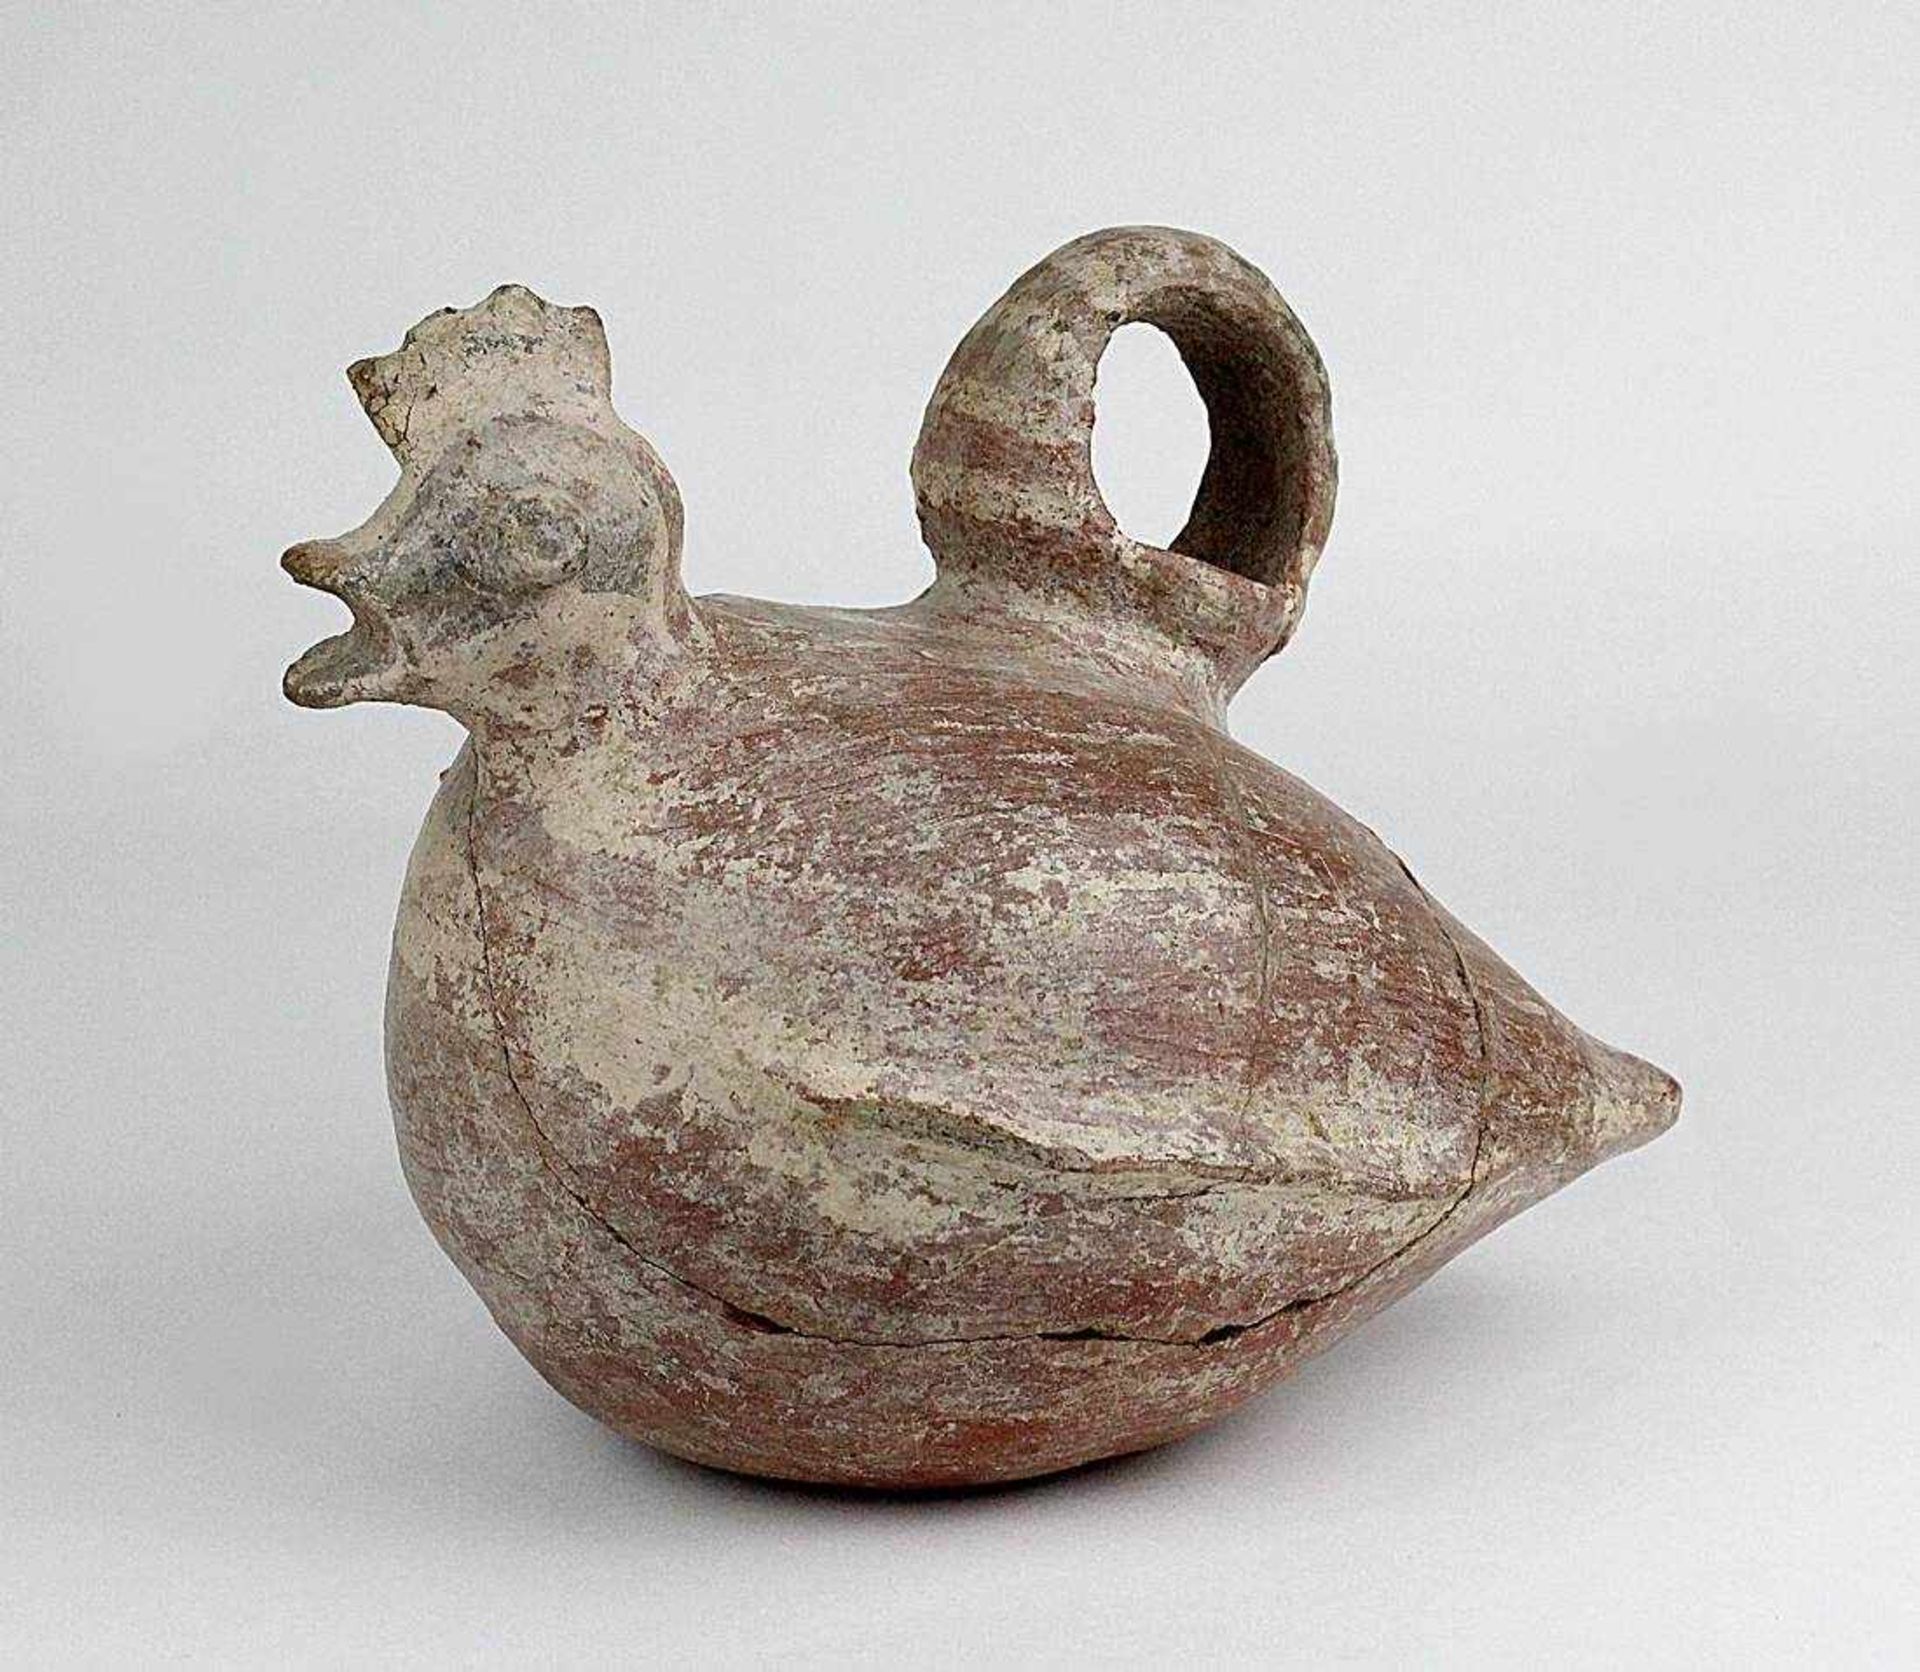 Präkolumbisches Tongefäß in Form einer sitzenden Henne, Vicus-Kultur, Peru, um 300 v. Chr. - 100